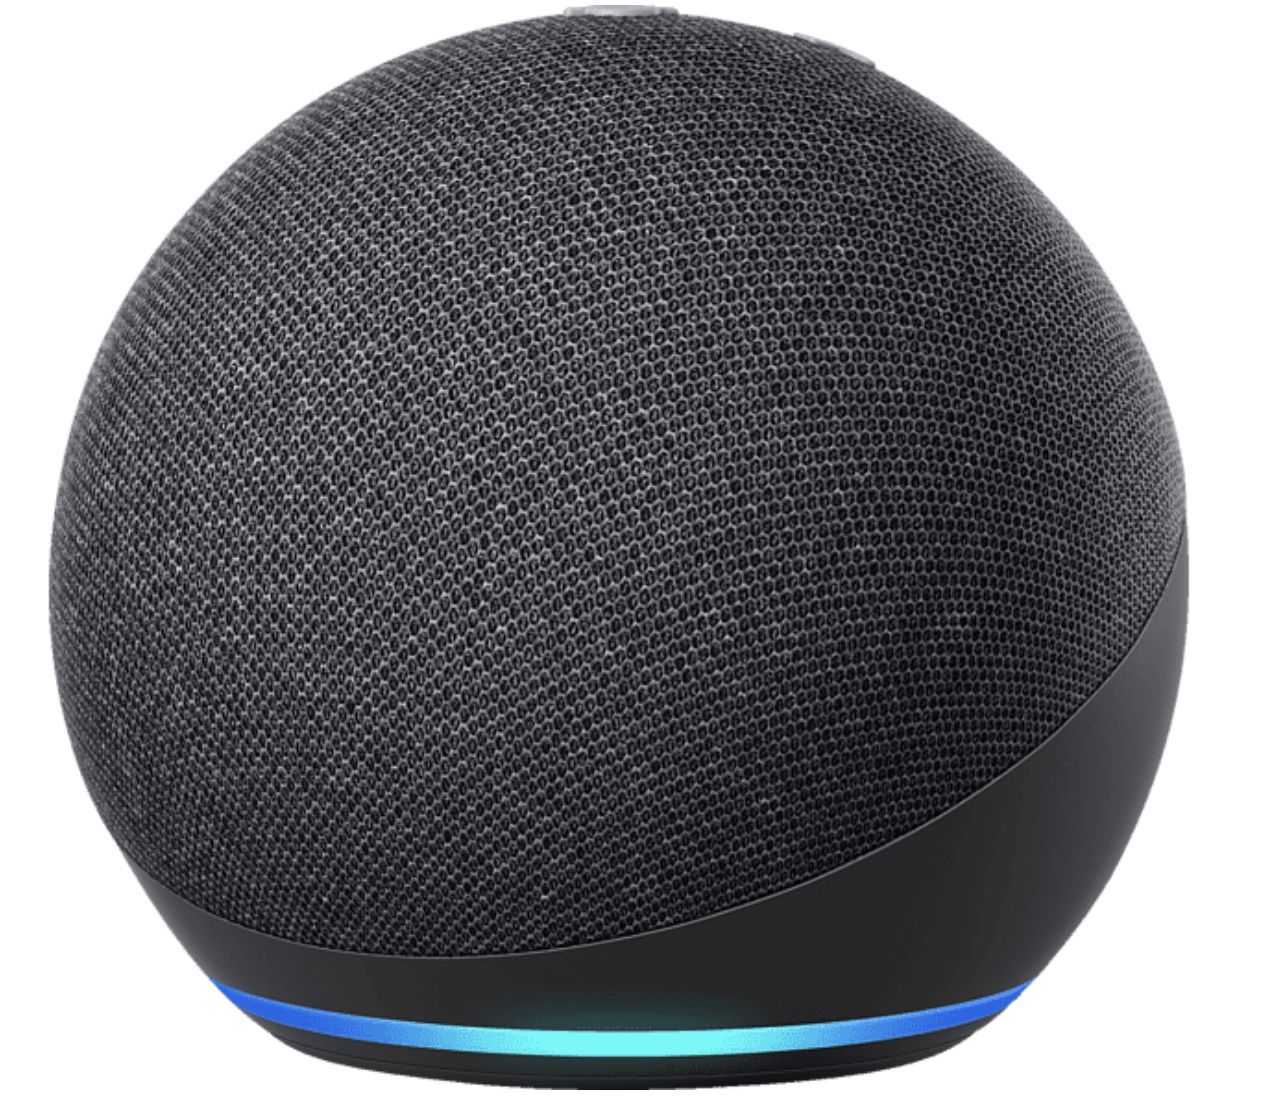 MediaMarkt: Amazon Echo Dot Angebote   z.B. Echo Dot 4. Generation mit Uhr ab 29,99€ (statt 40€)